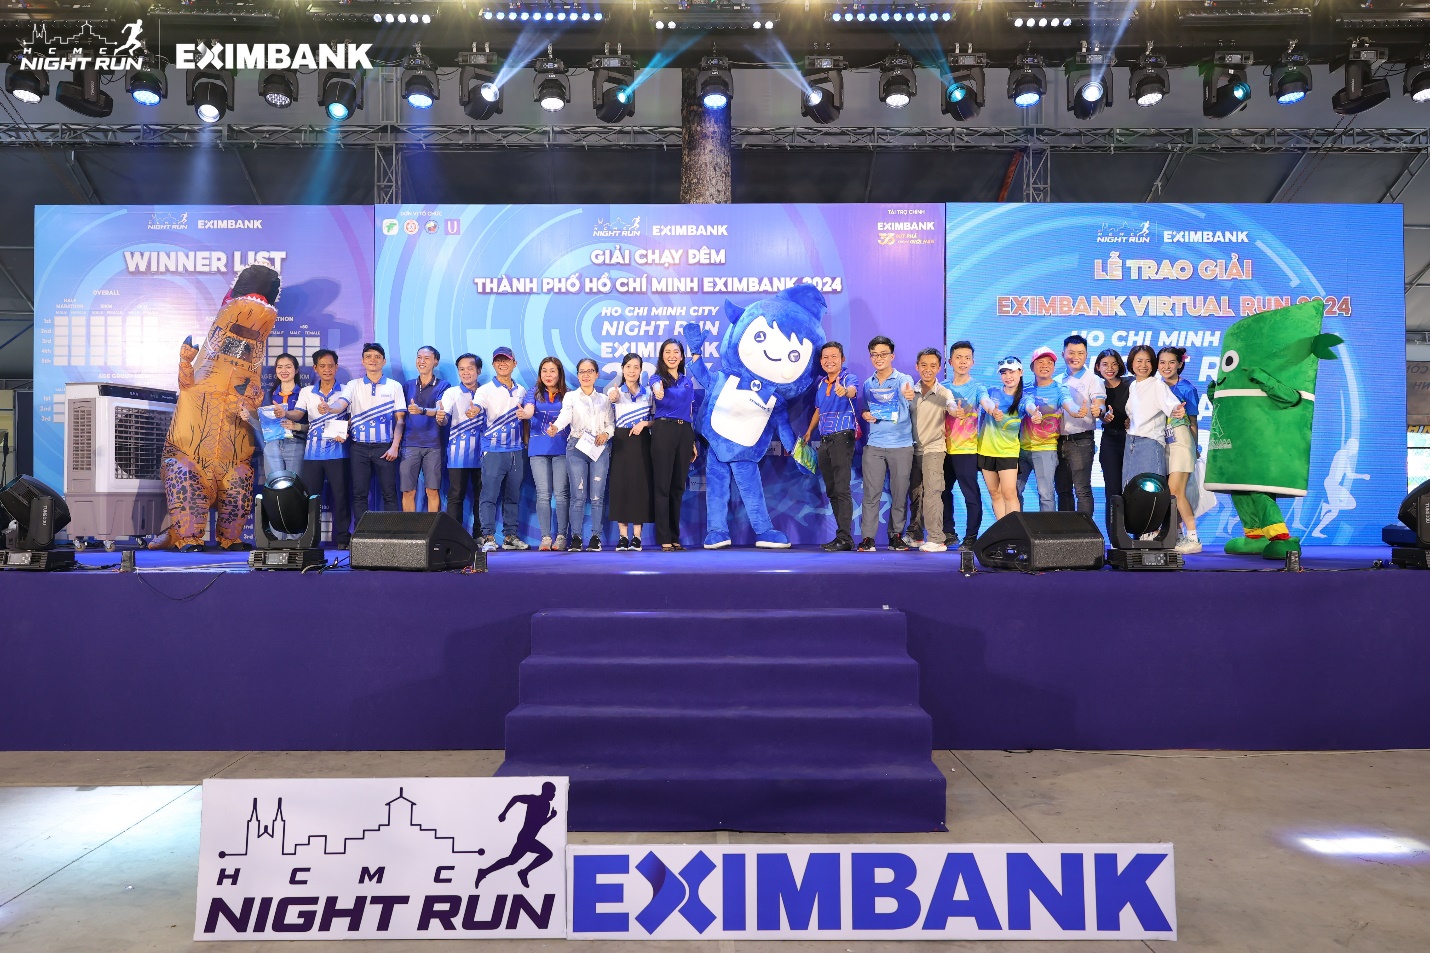 Ho Chi Minh City Night Run Eximbank thành công rực rỡ  - lan tỏa tinh thần năng động và “bứt phá” đến cộng đồng- Ảnh 5.